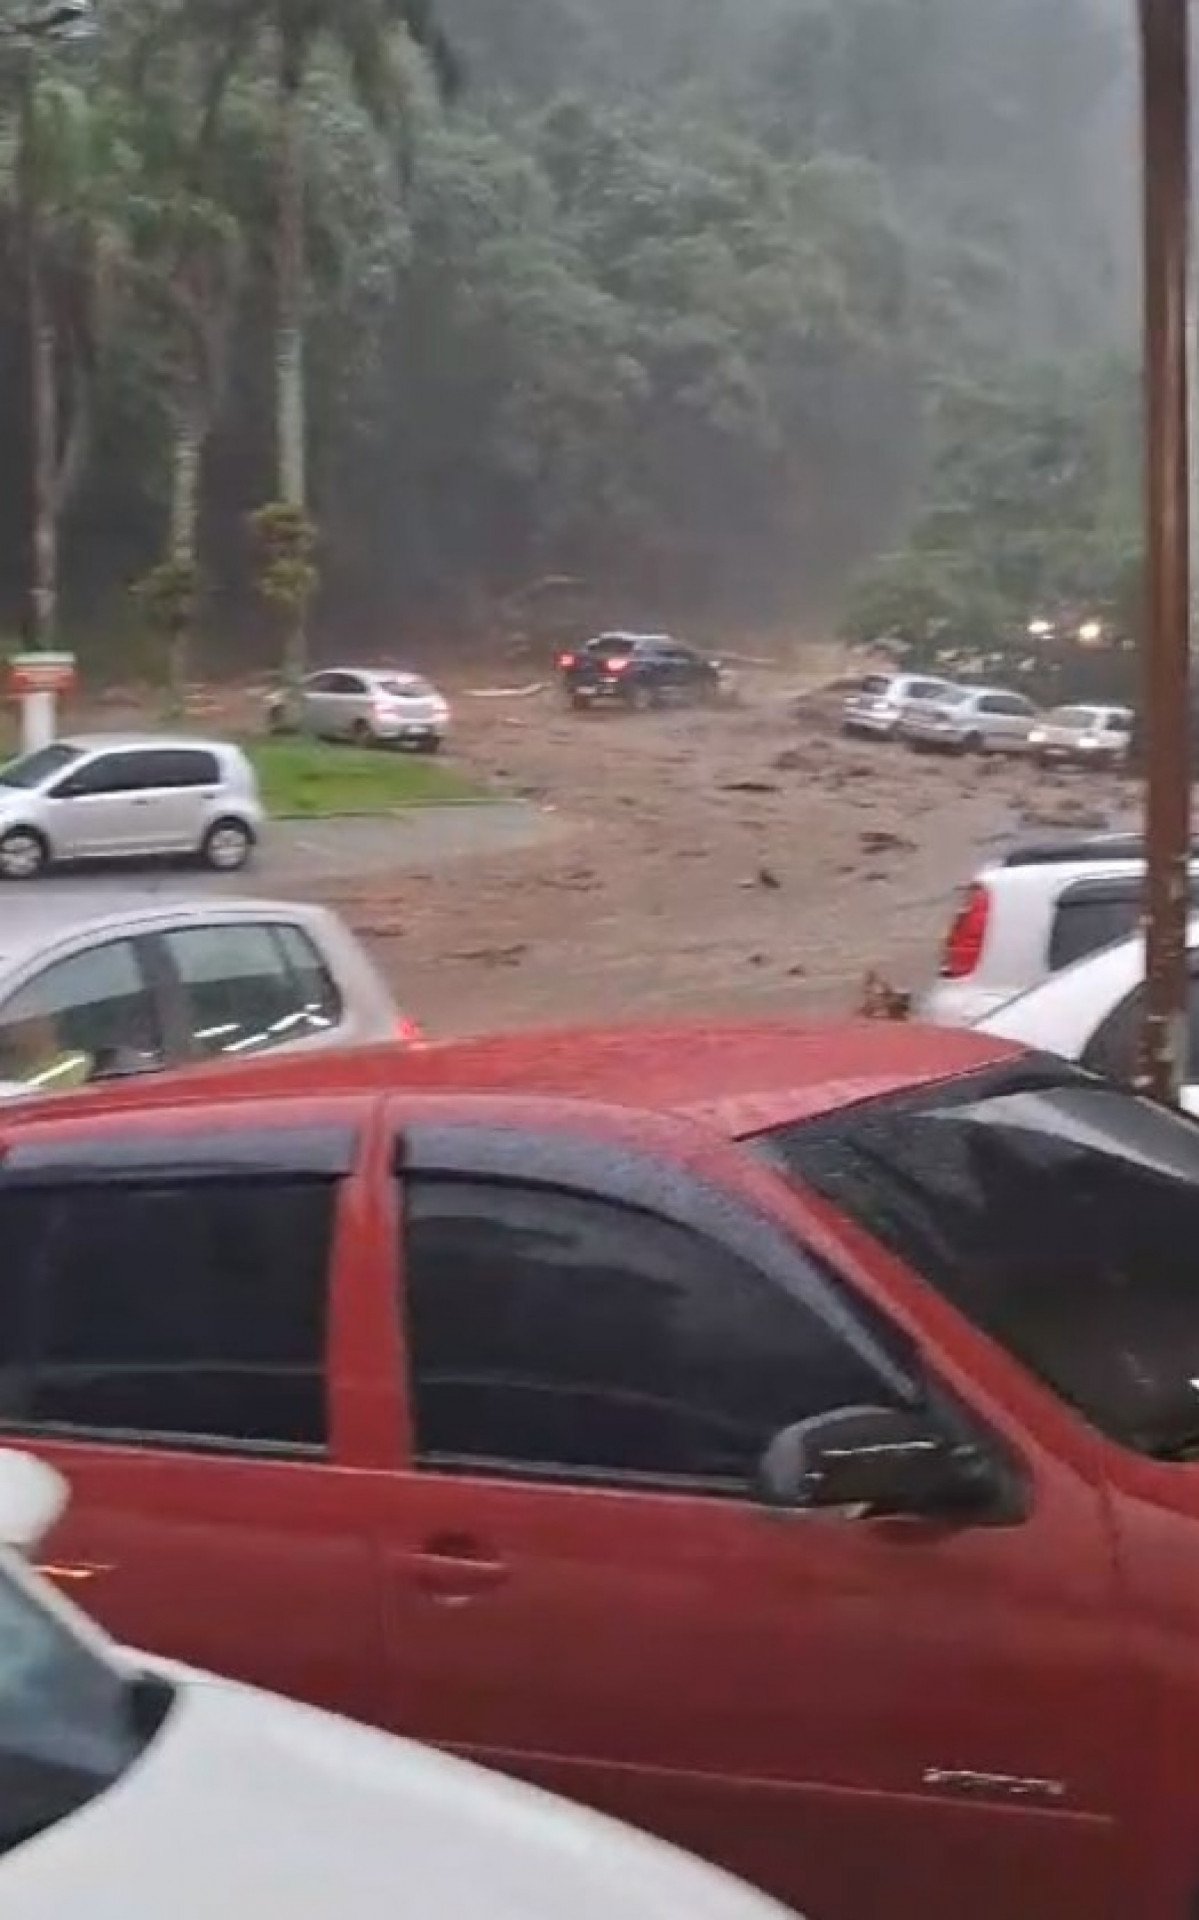 Chuva e lamaçal na serra de Guapimirim; motoristas esperam a chuva diminuir para seguir viagem - Foto: Redes Sociais - Divulgação